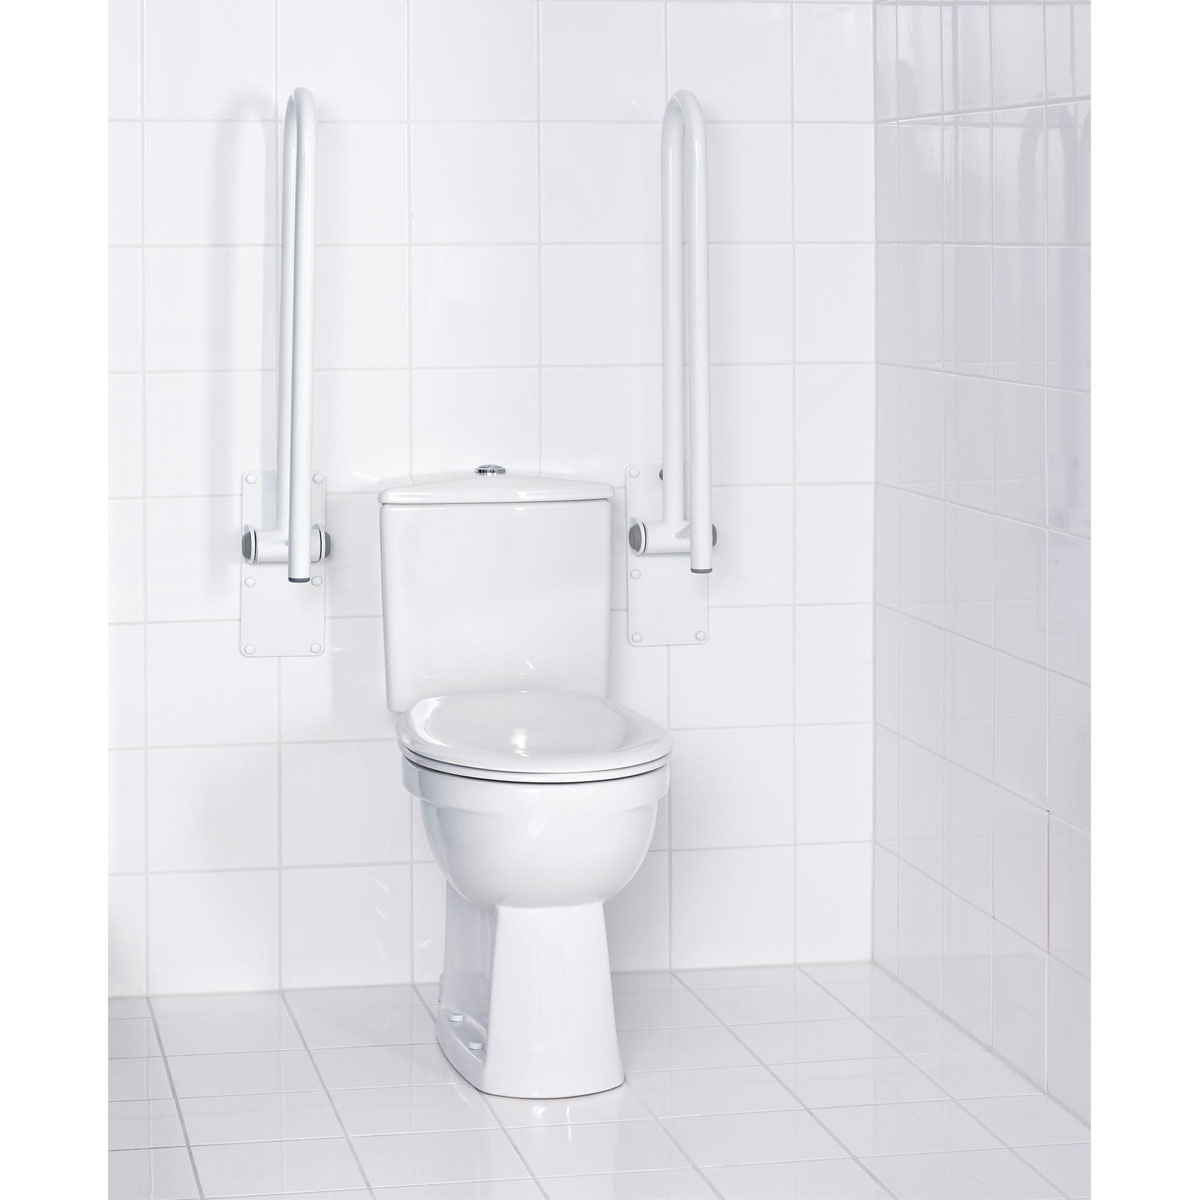 Ridder WC-Aufstehbügel 76 cm klappbar weiß | 543088